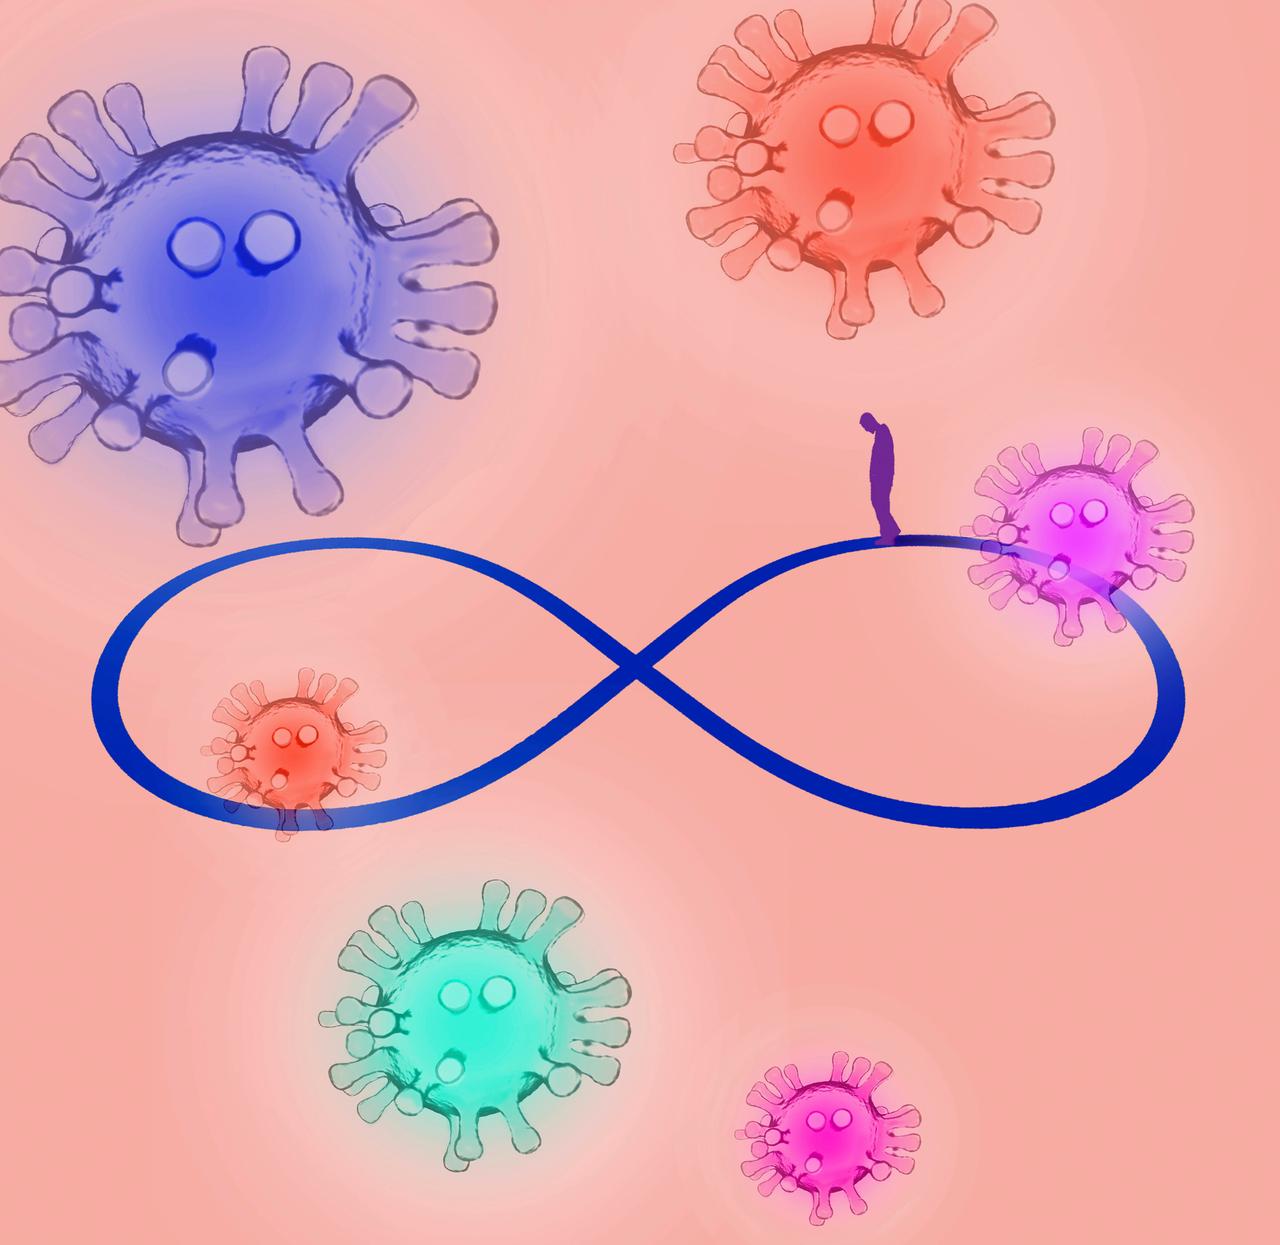 Mann umgeben von Covid-Virus-Organismen geht auf einem Unendlichkeitssymbol 